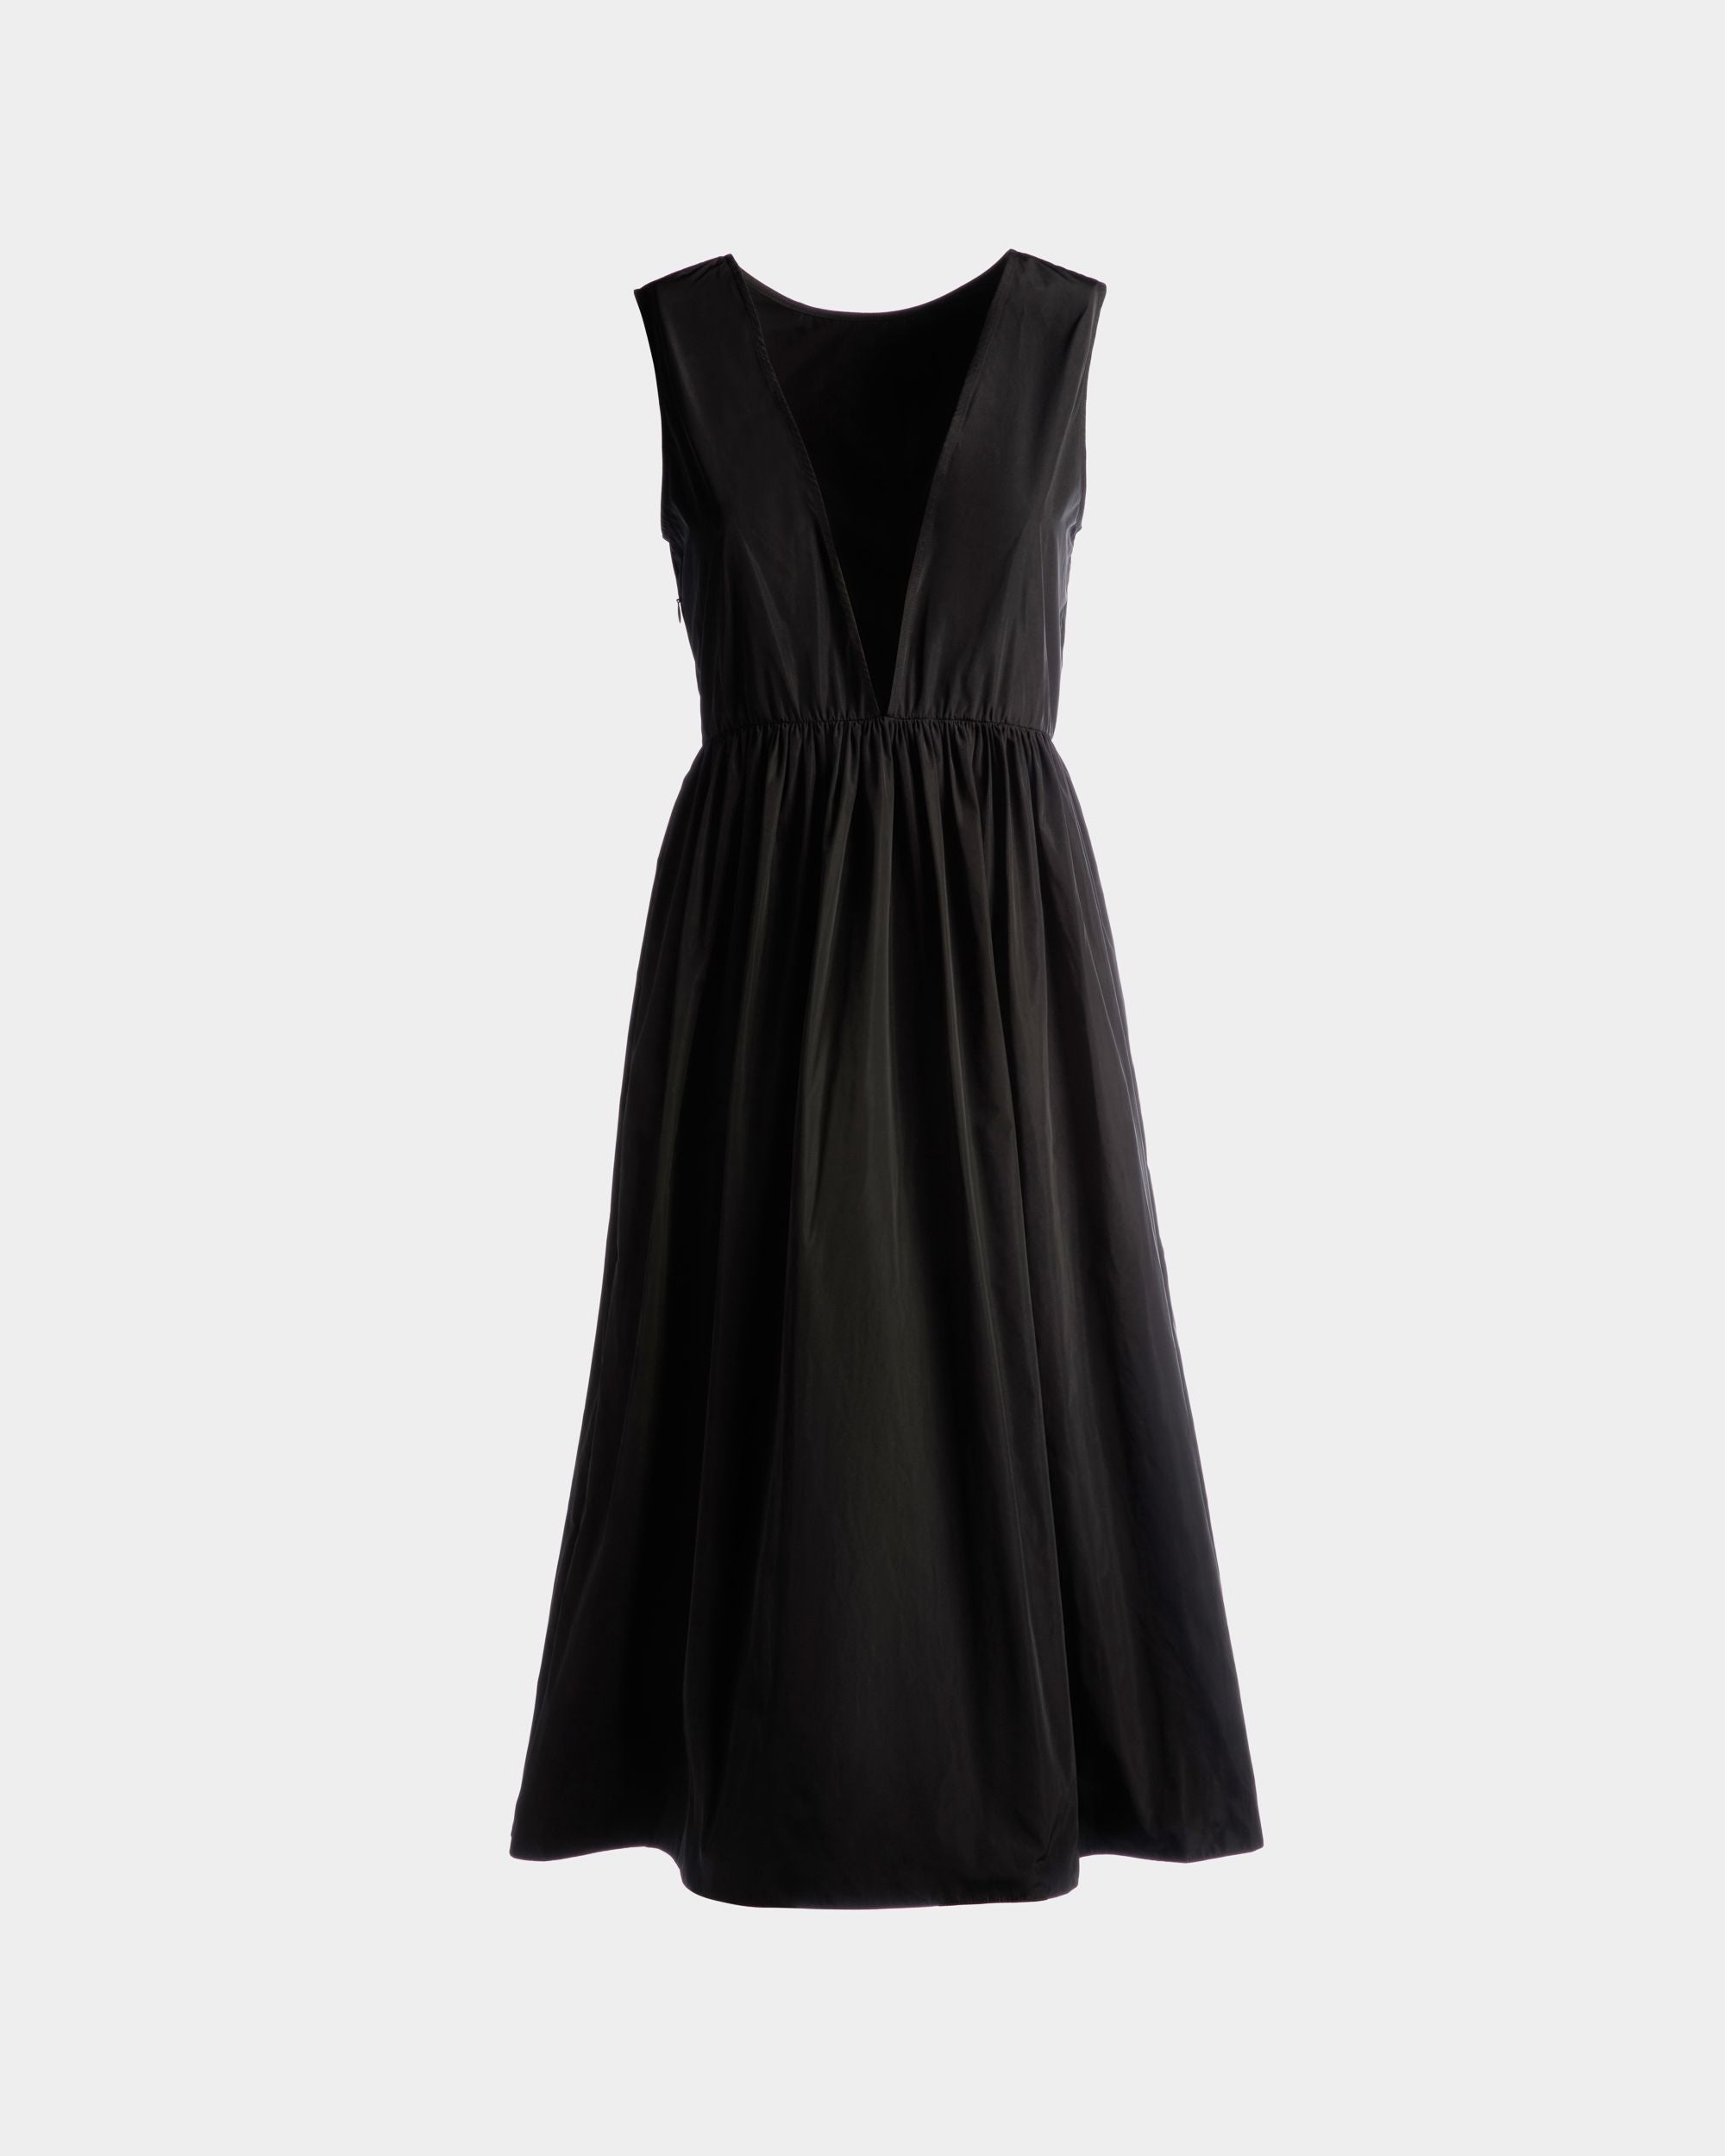 Women's Sleeveless Midi Dress in Black Technical Duchesse | Bally | Still Life Back